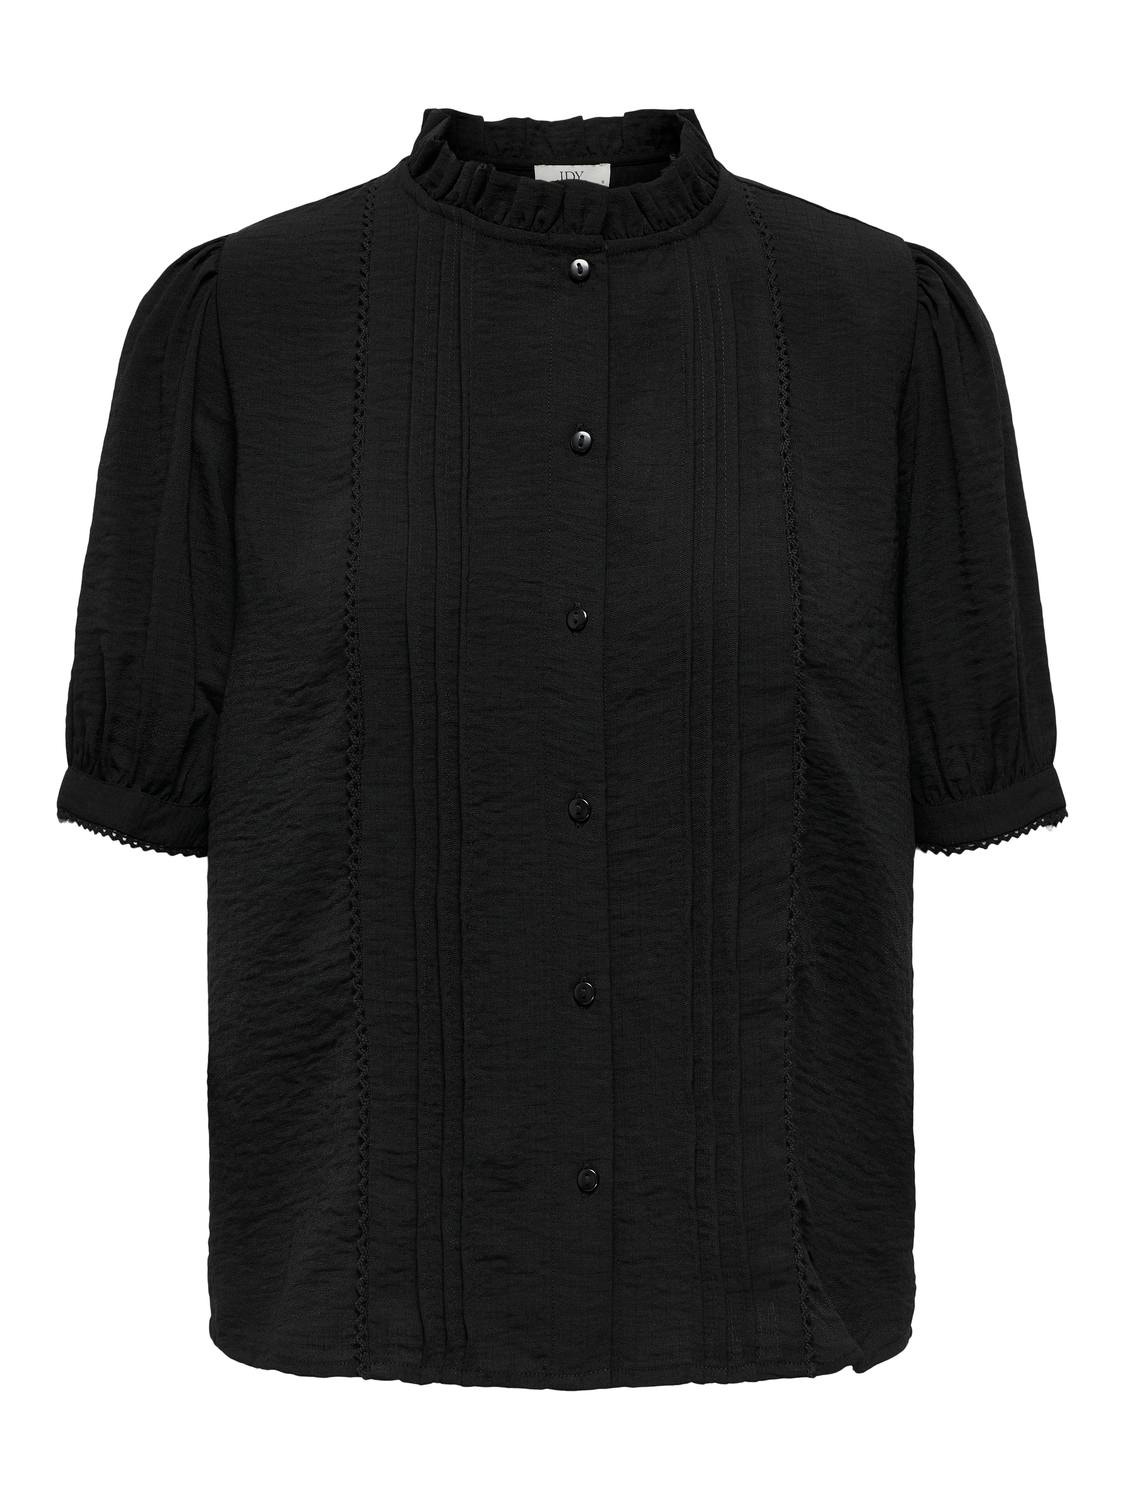 ONLY Camisas Corte regular Cuello de camisa Puños de encaje -Black - 15336224